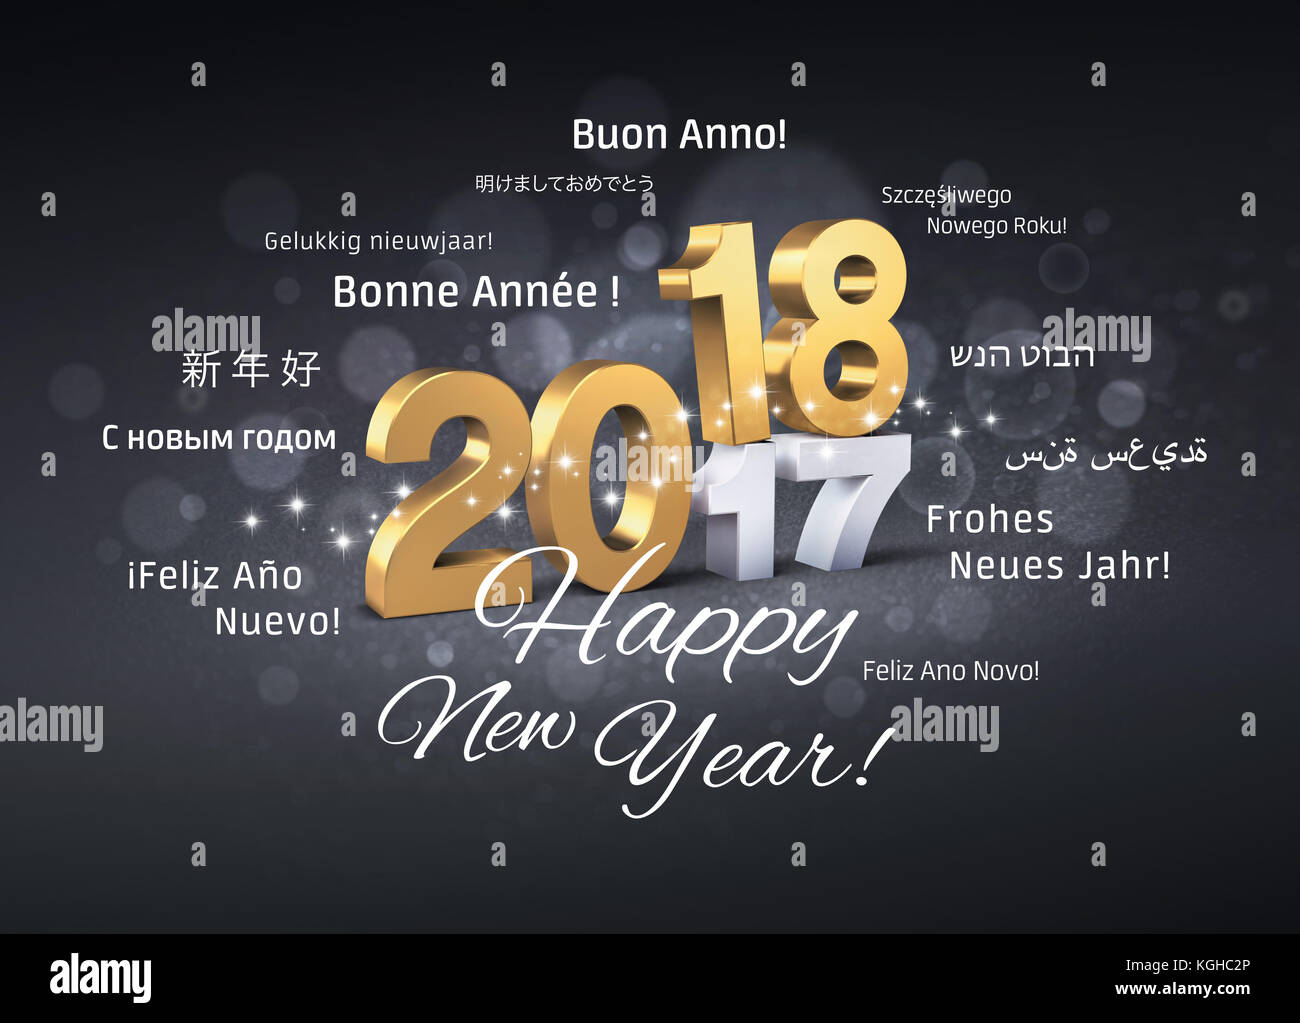 Oro 2018 Anno nuovo dattiloscritto sopra 2017 e i messaggi di saluto in più lingue su una festosa sfondo nero - 3d illustrazione Foto Stock